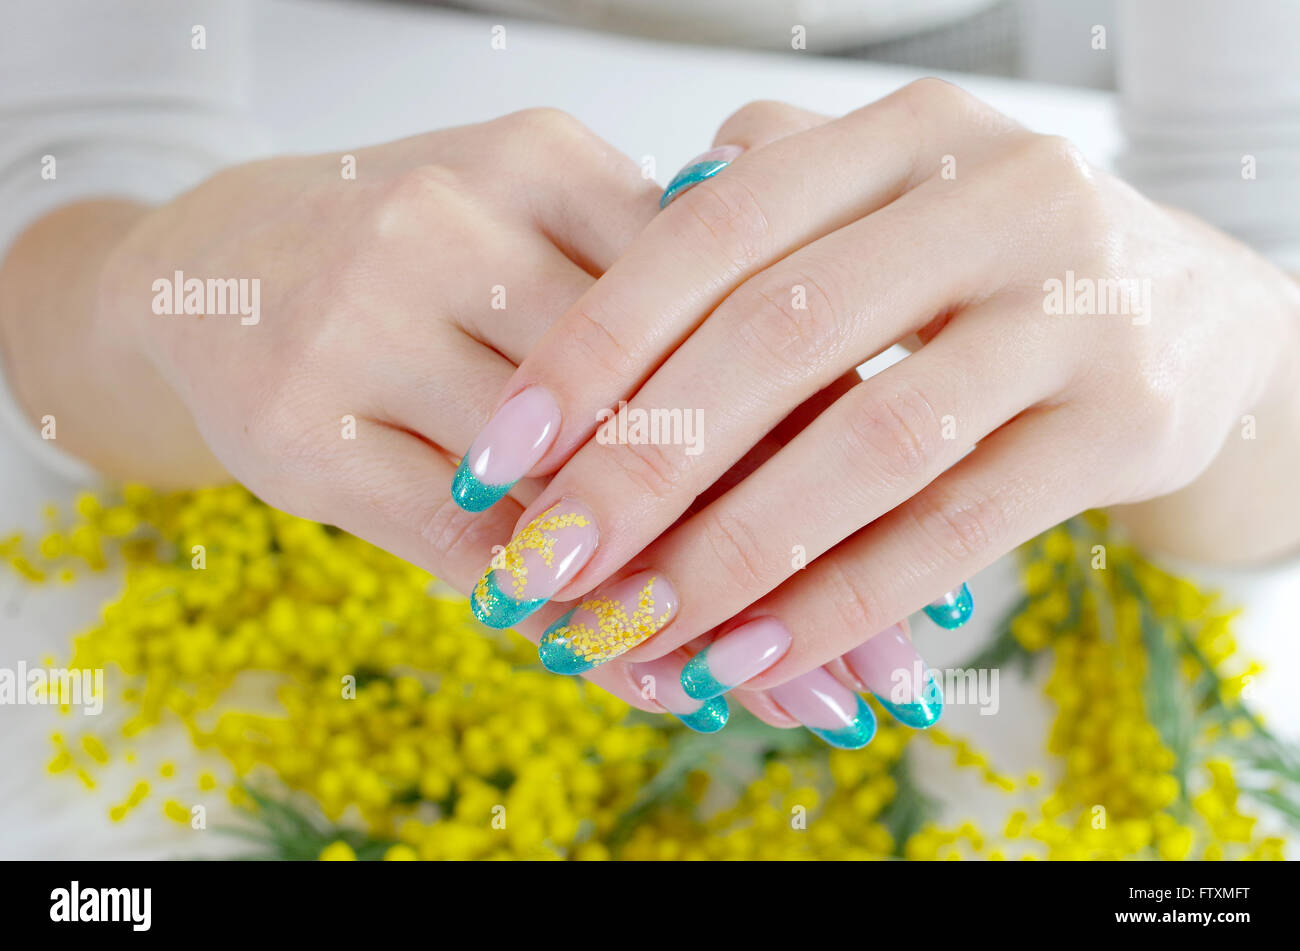 Woman's hands avec nail art design Banque D'Images